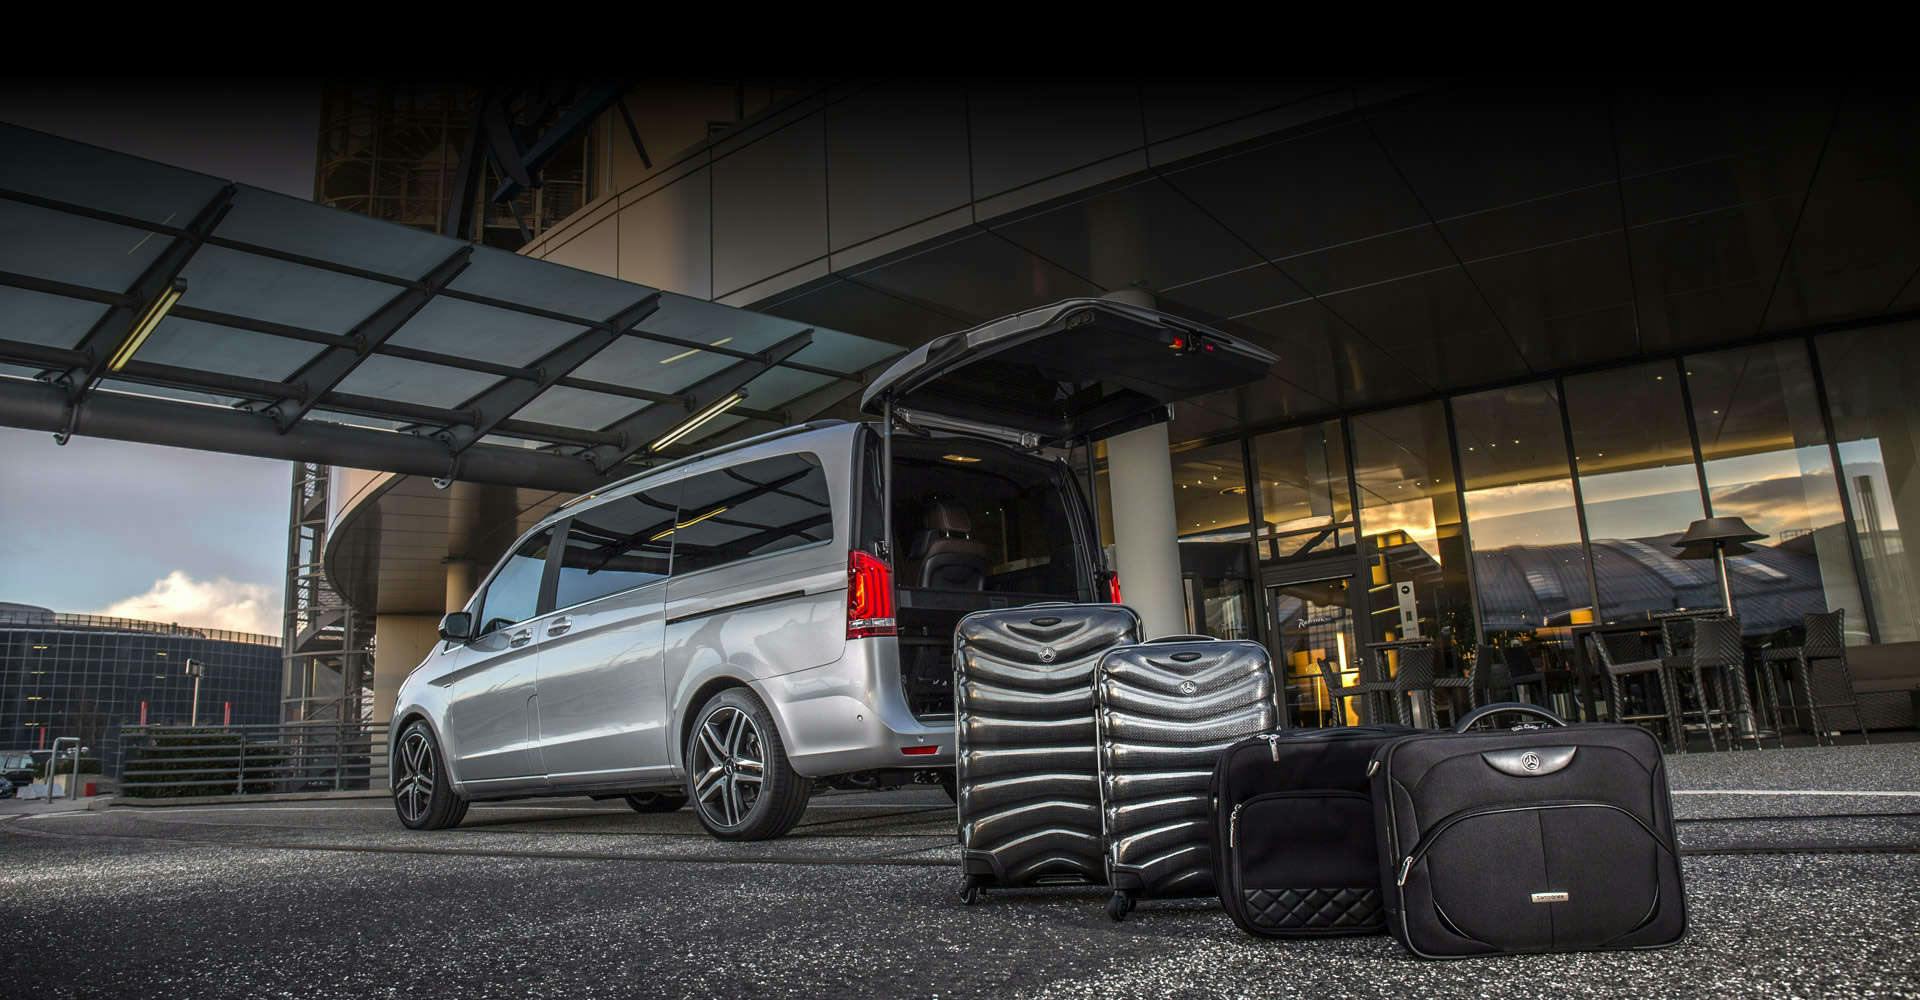 Transfert privé jusqu'aux aéroports de Paris en minibus de luxe